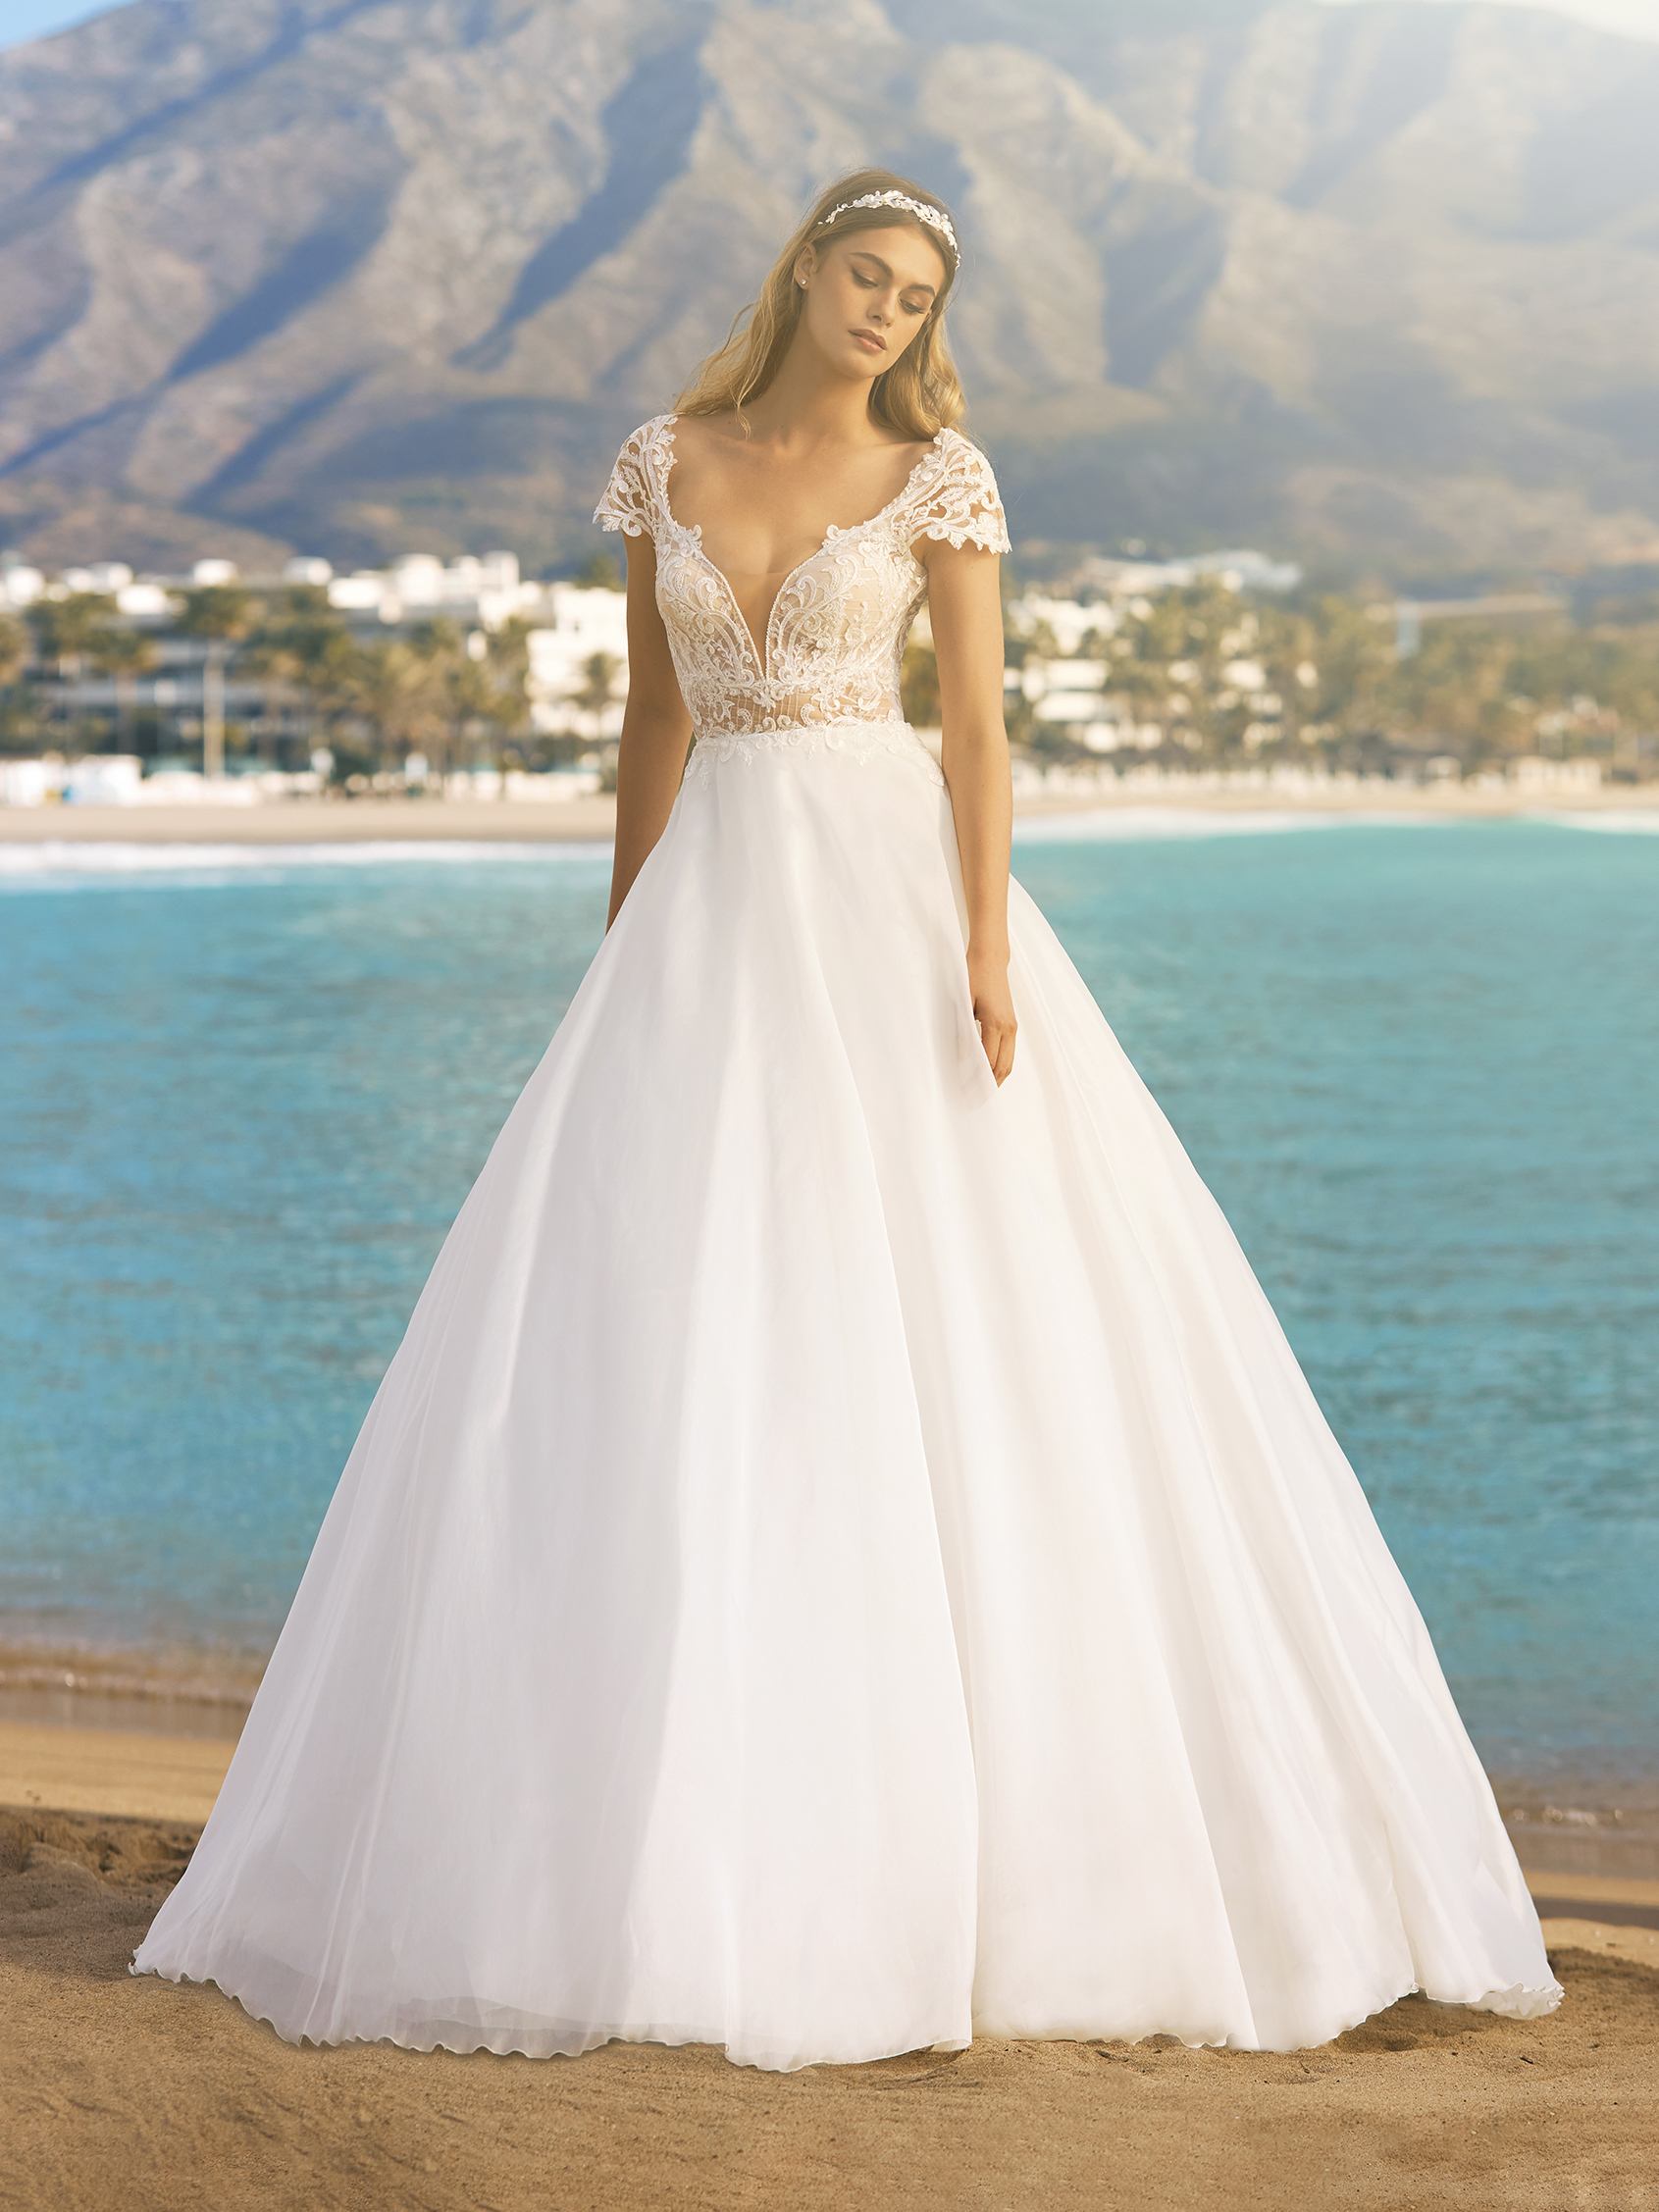 Vestidos de novia para playa: Vaporosidad y frescura | Pronovias